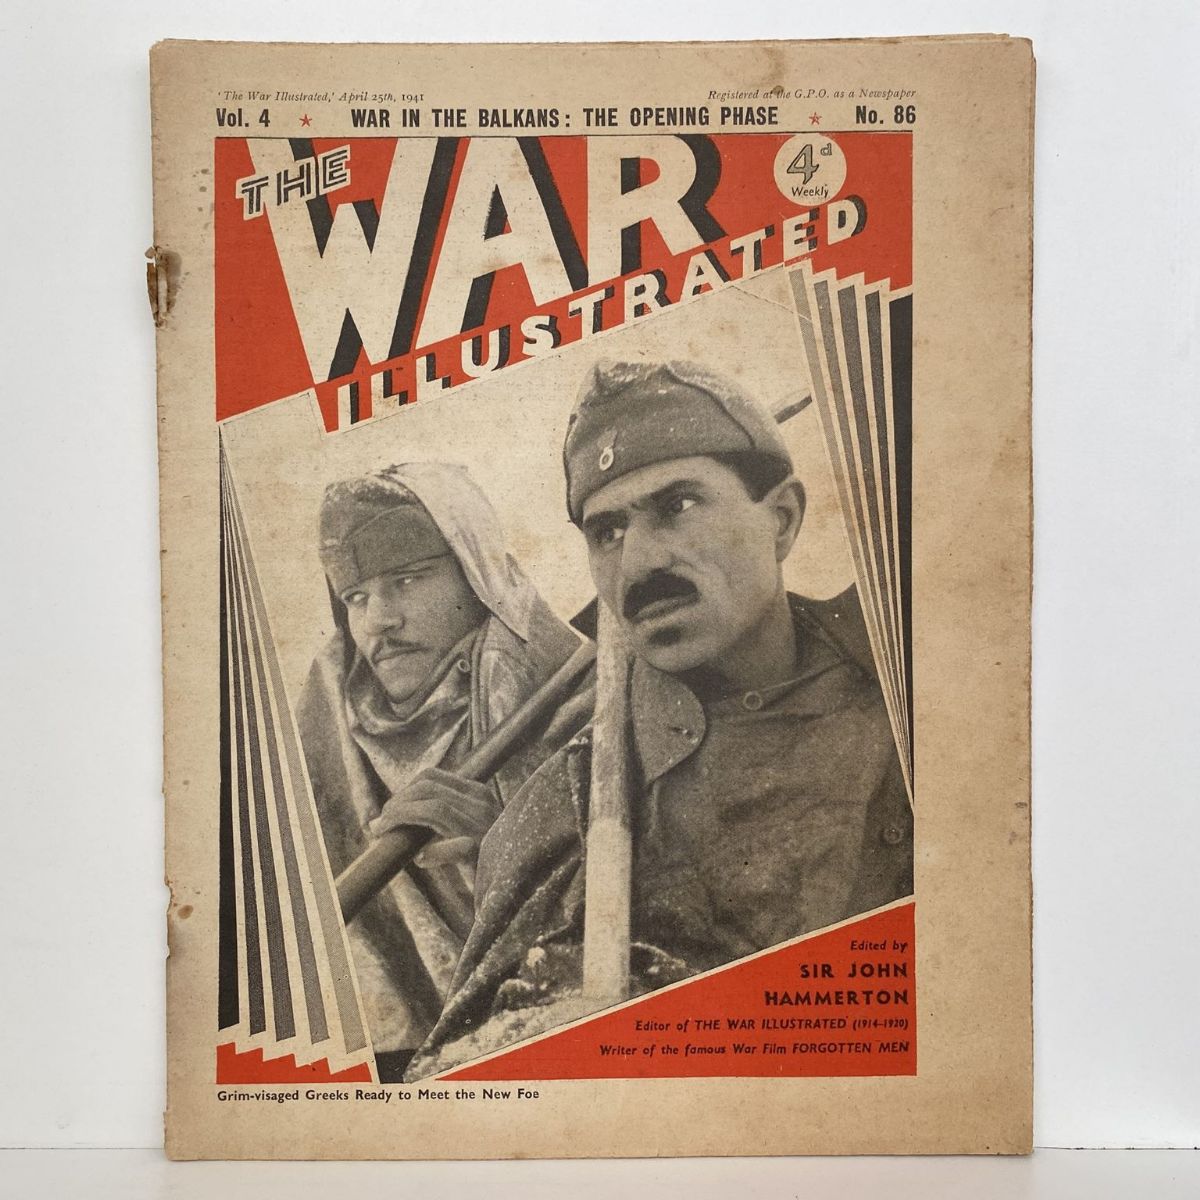 THE WAR ILLUSTRATED - Vol 4, No 86, 25th April 1941